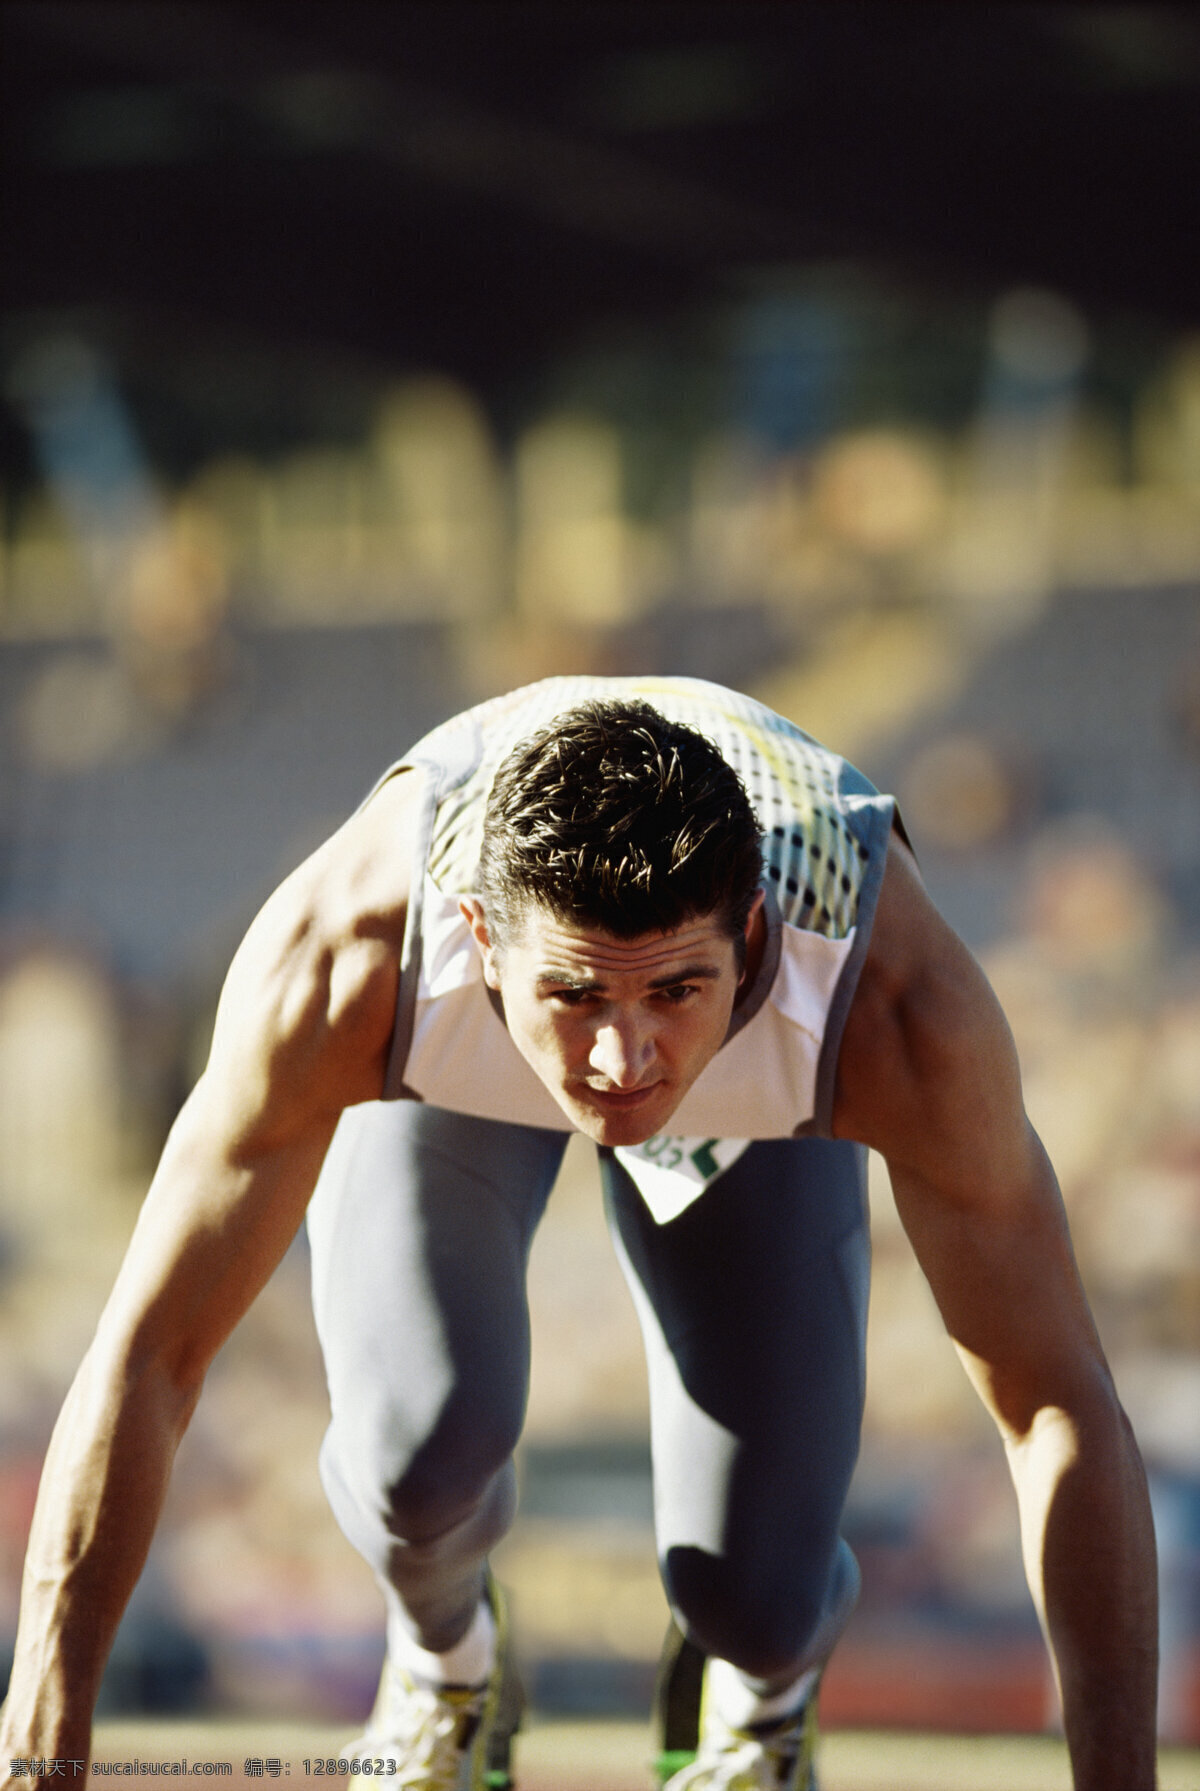 起跑 短跑 运动员 体育运动 体育项目 奥运会 奥林匹克运动会 短跑运动员 跑道 男性运动员 生活百科